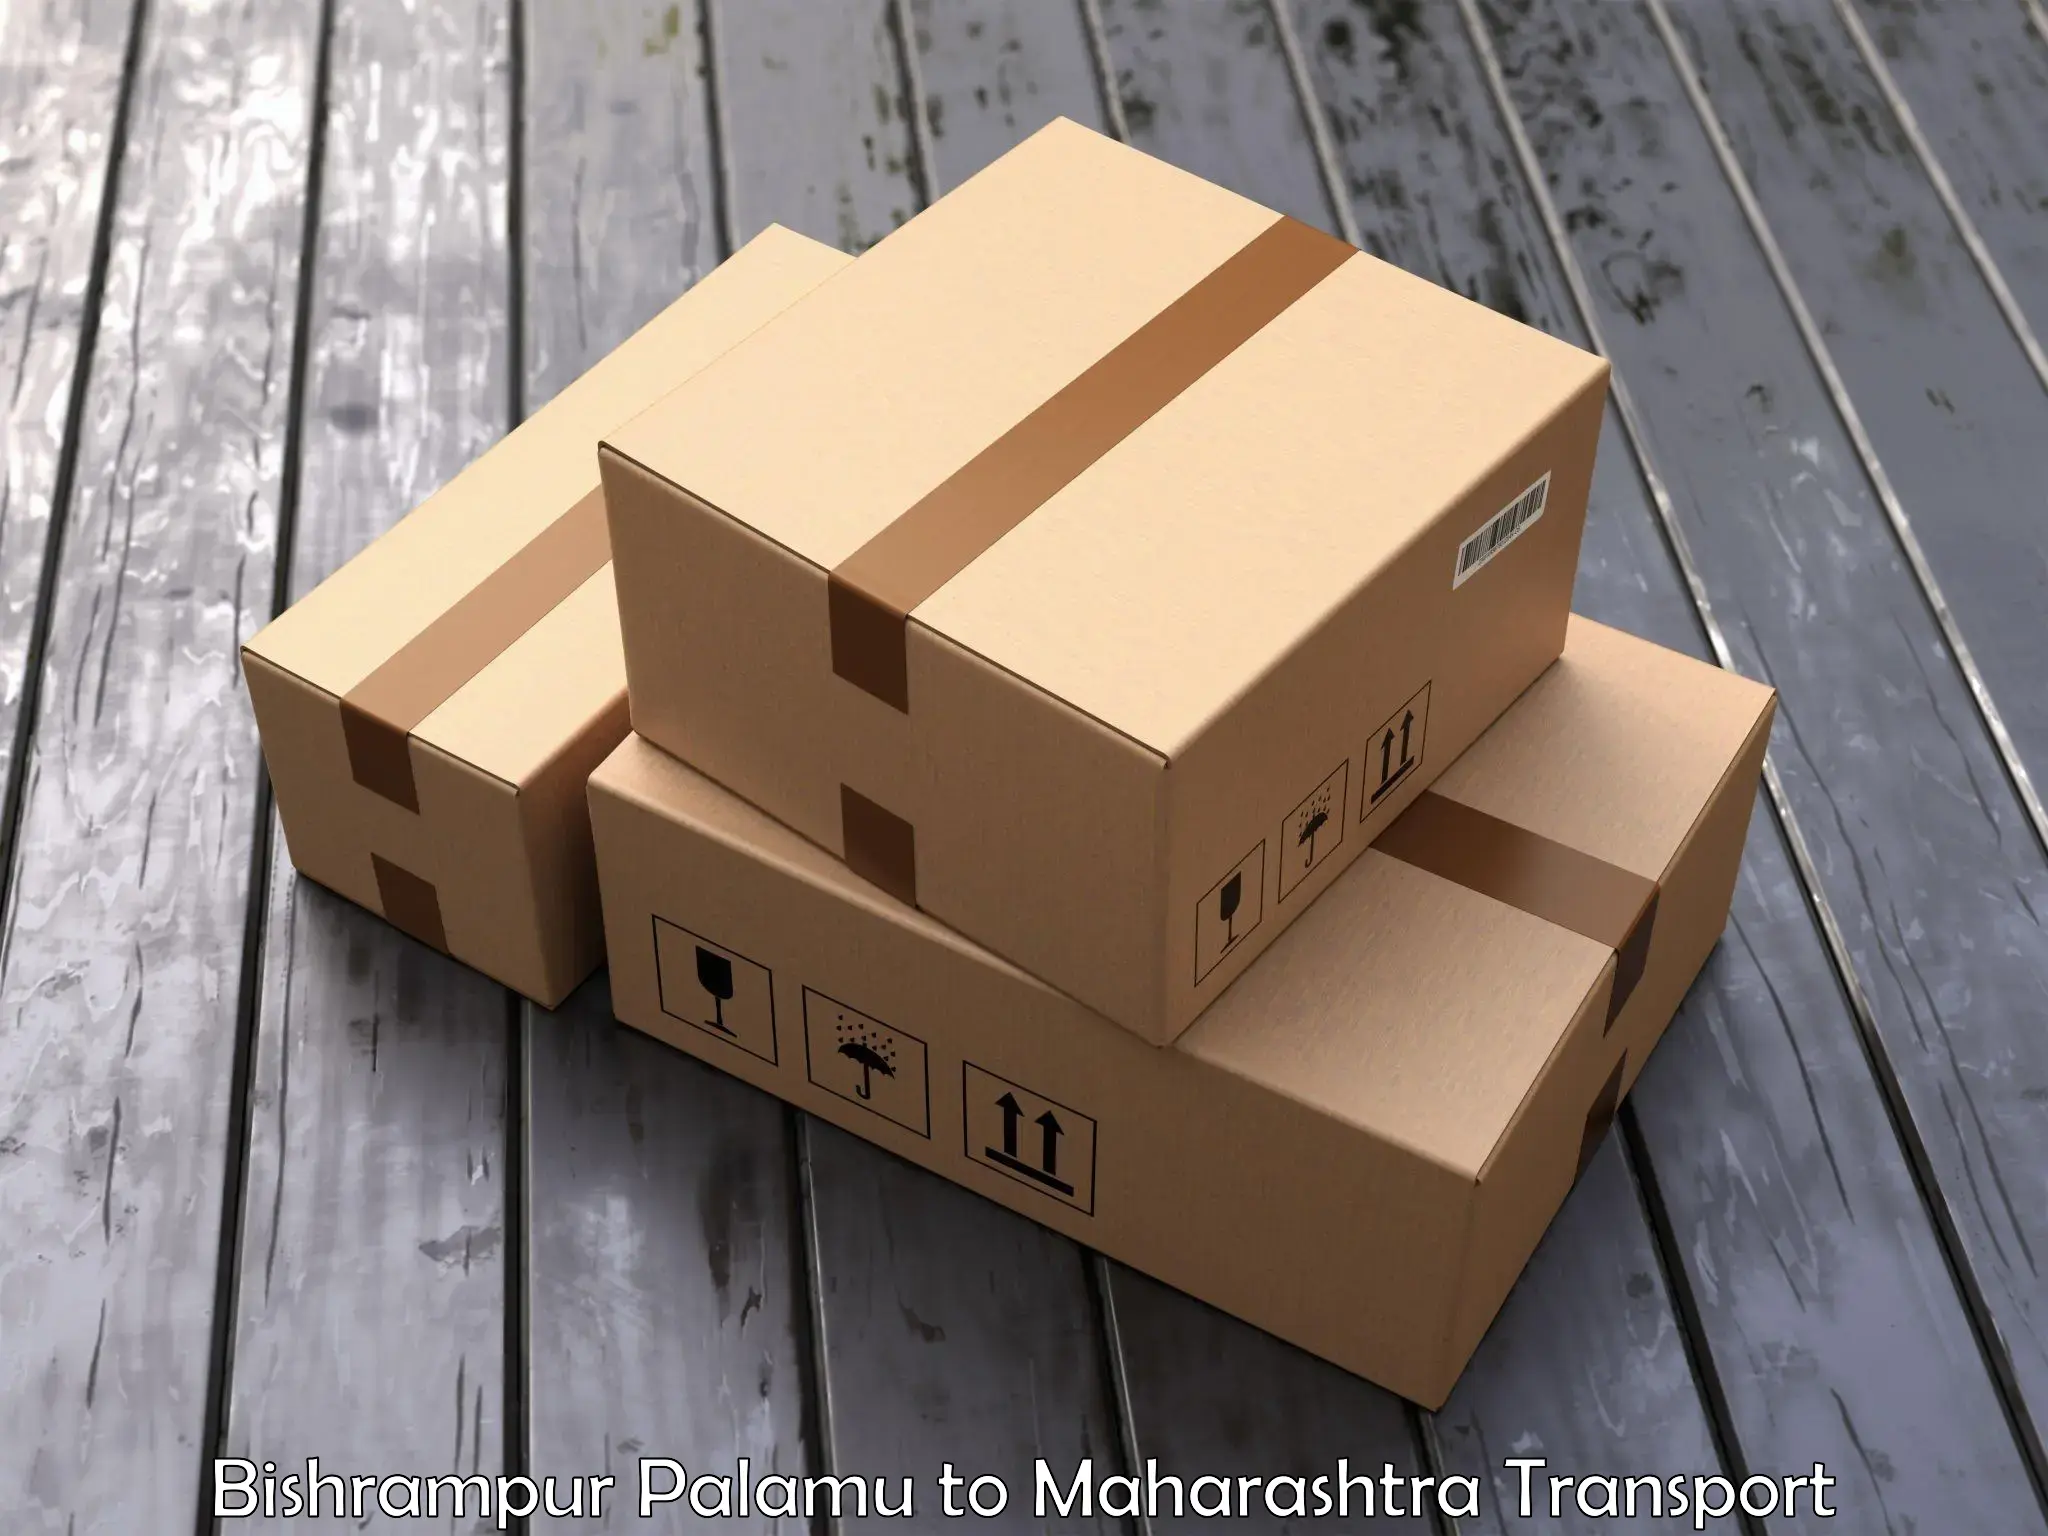 Furniture transport service Bishrampur Palamu to Navapur